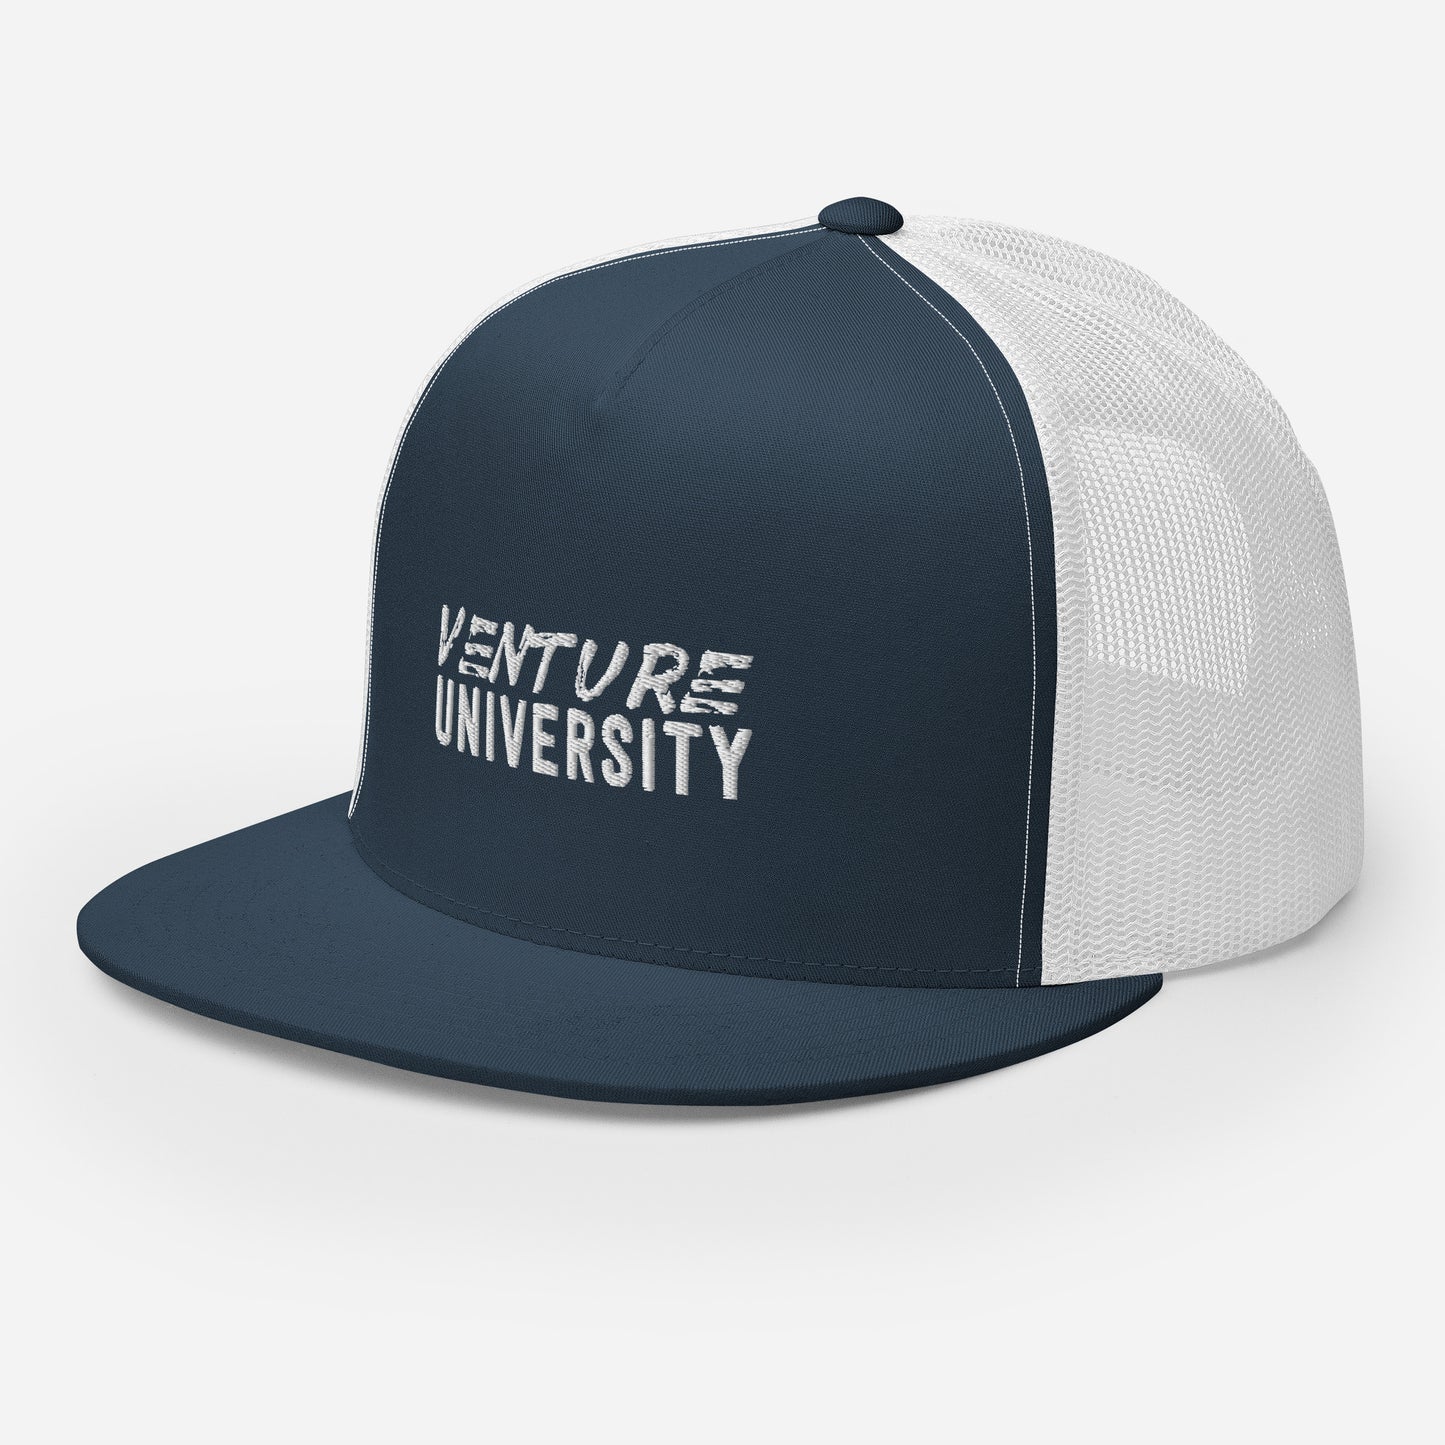 Venture University Trucker Cap (Smooth Front)